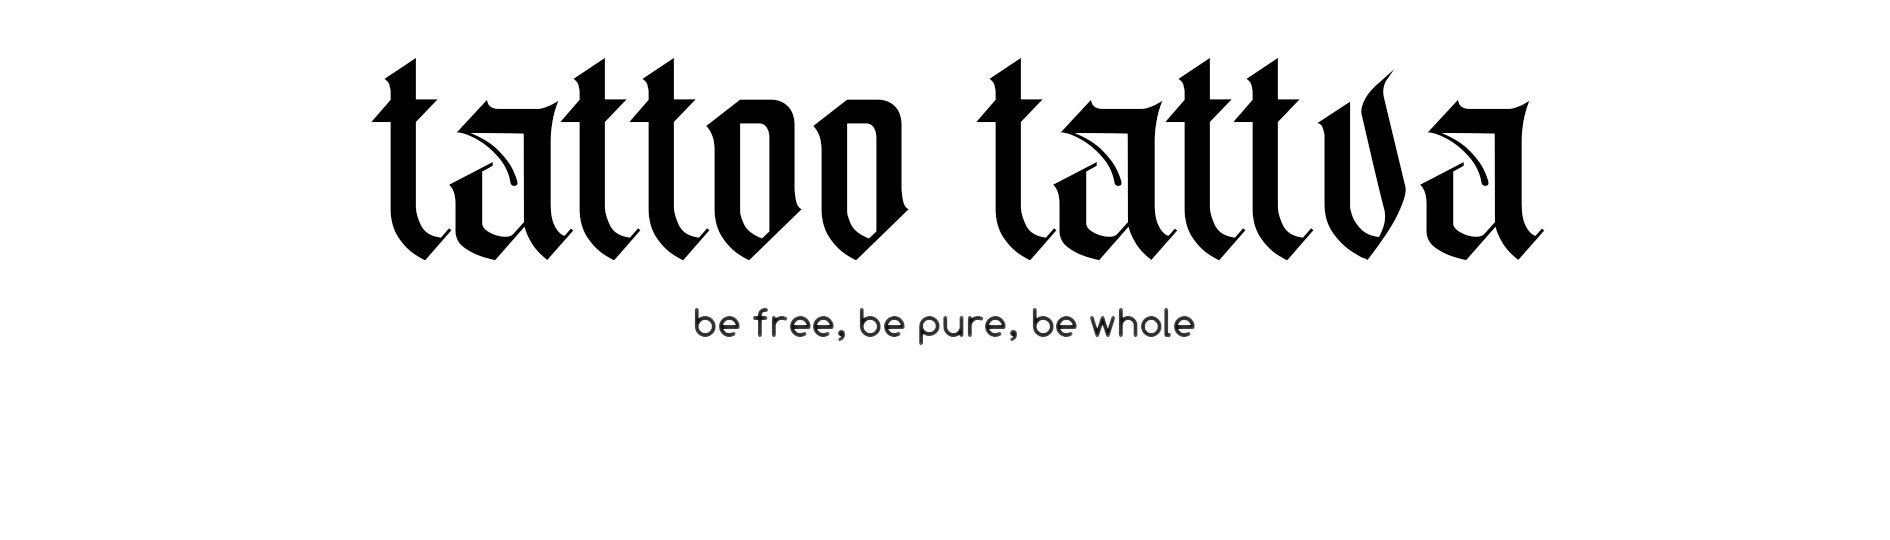 Tattoo Tattva logo